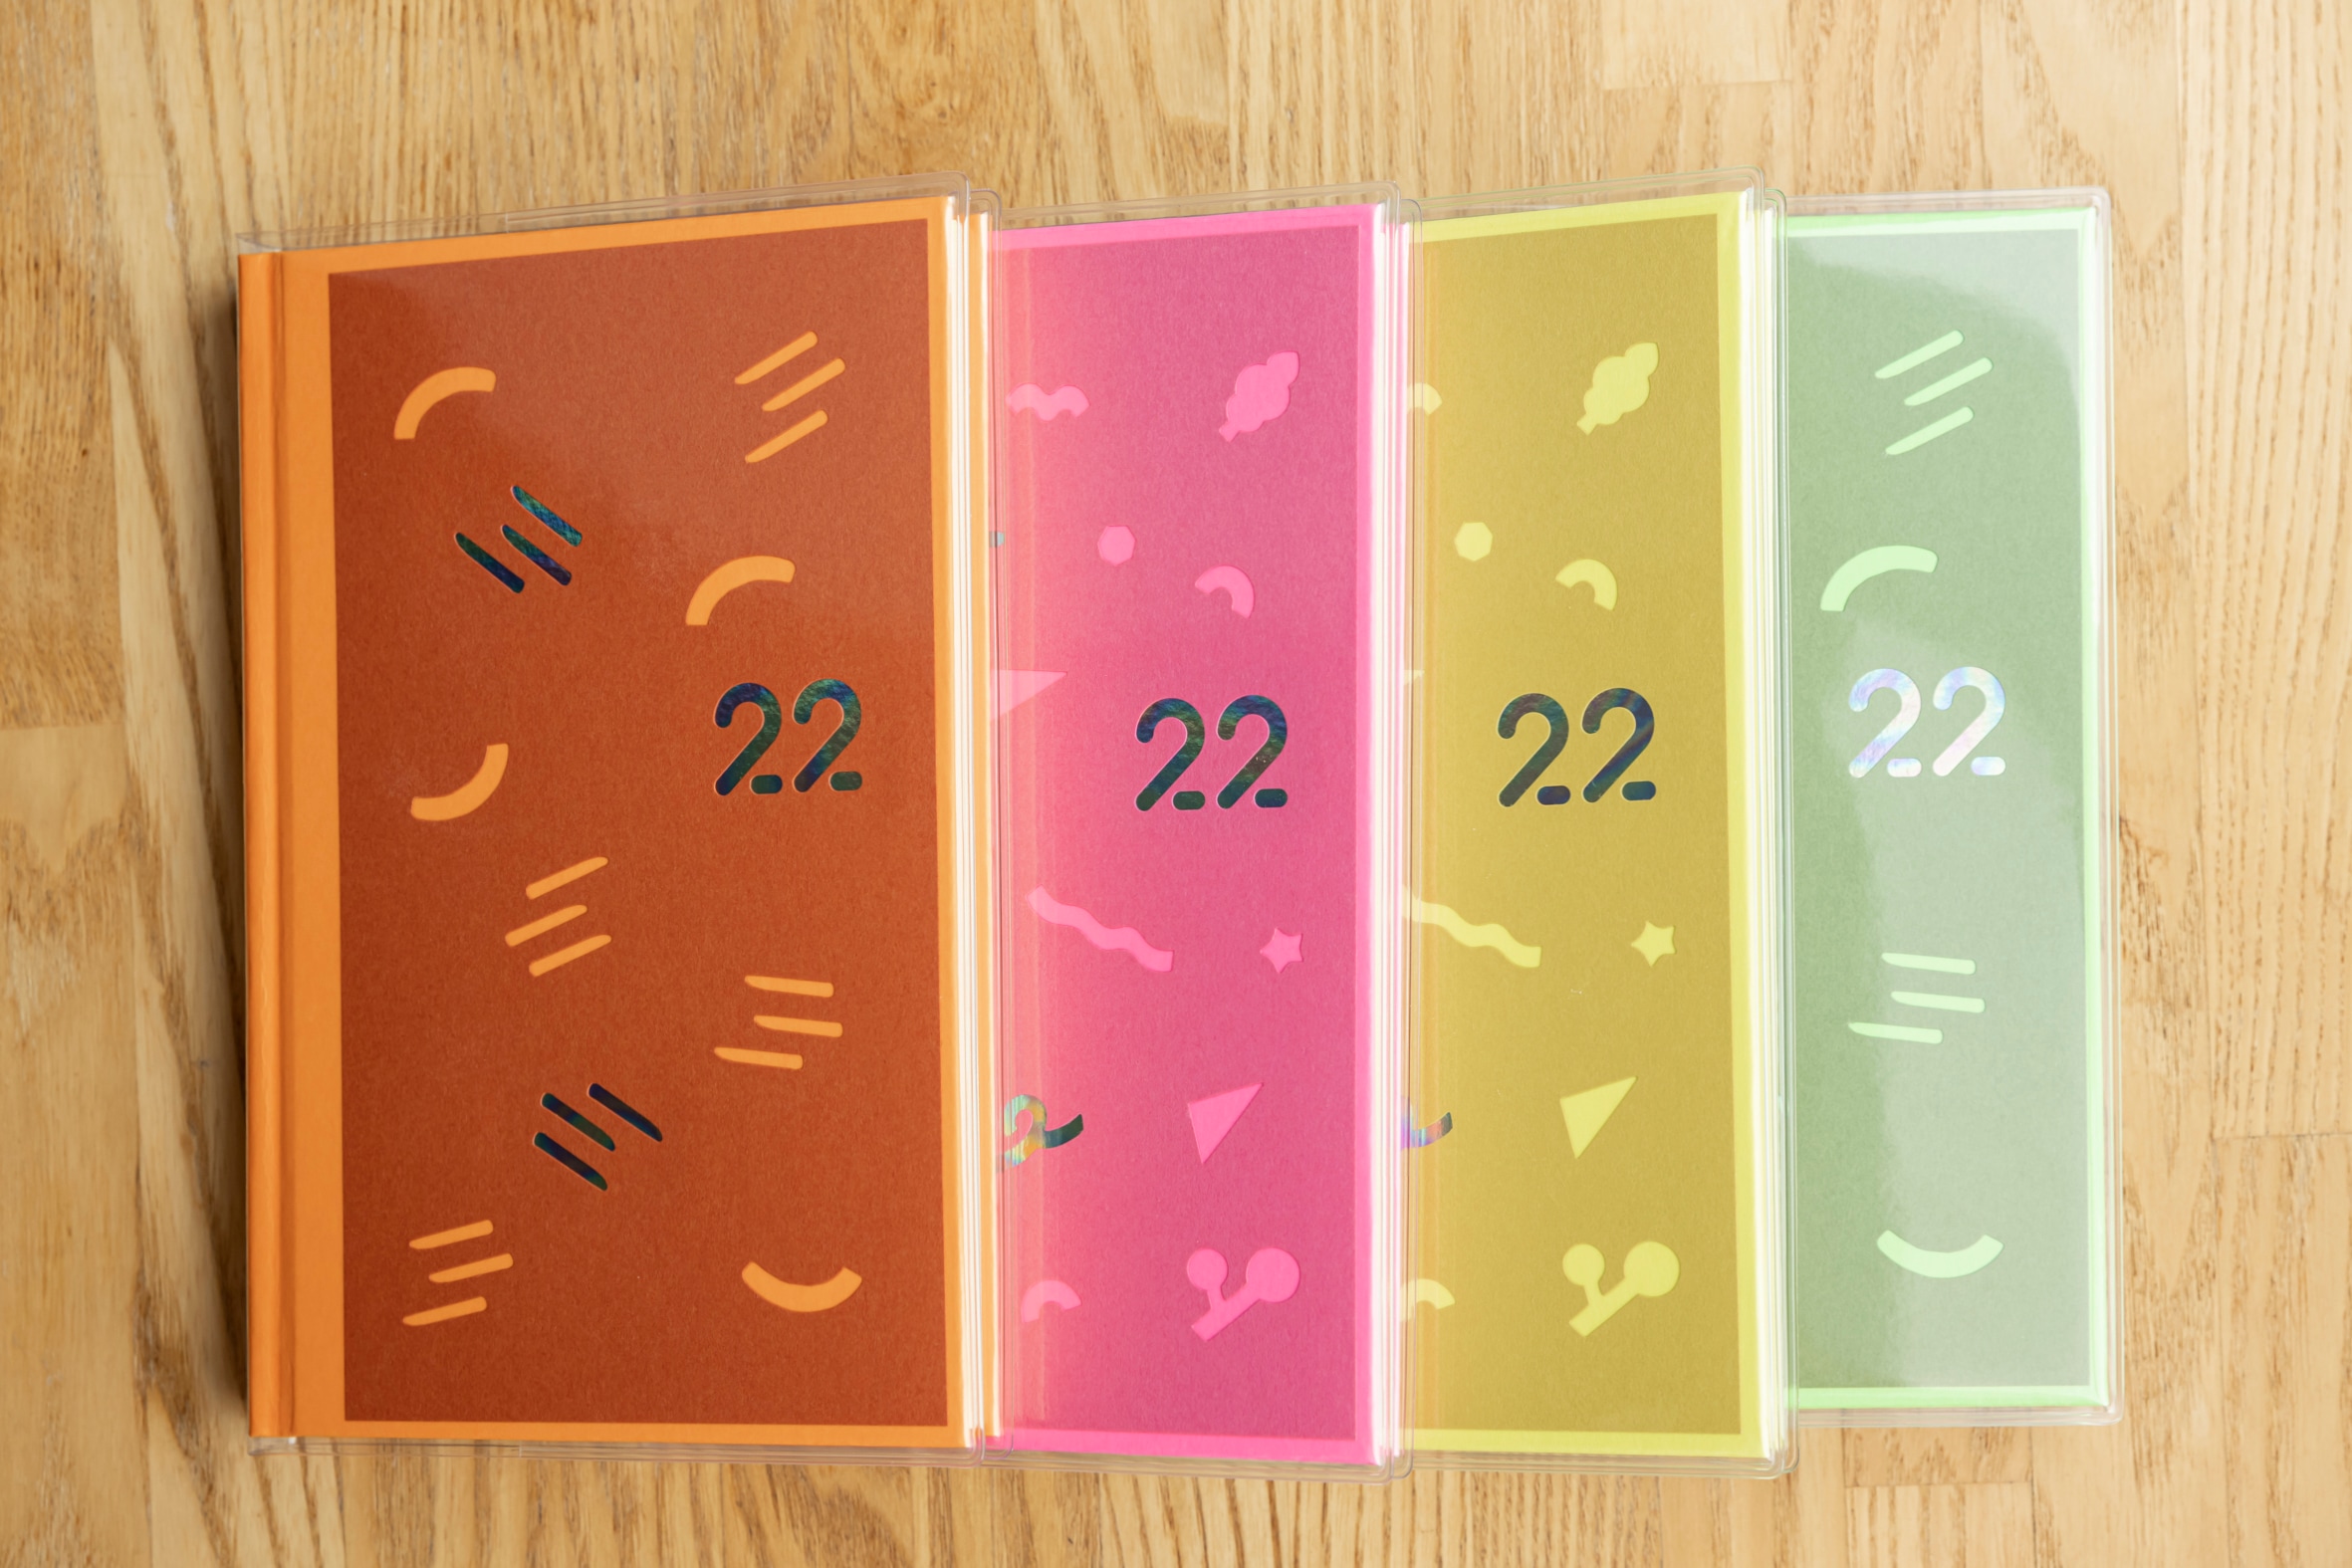 石田製本の「booco 2022 diary 」4種類,カラフルな布貼りの日記帳